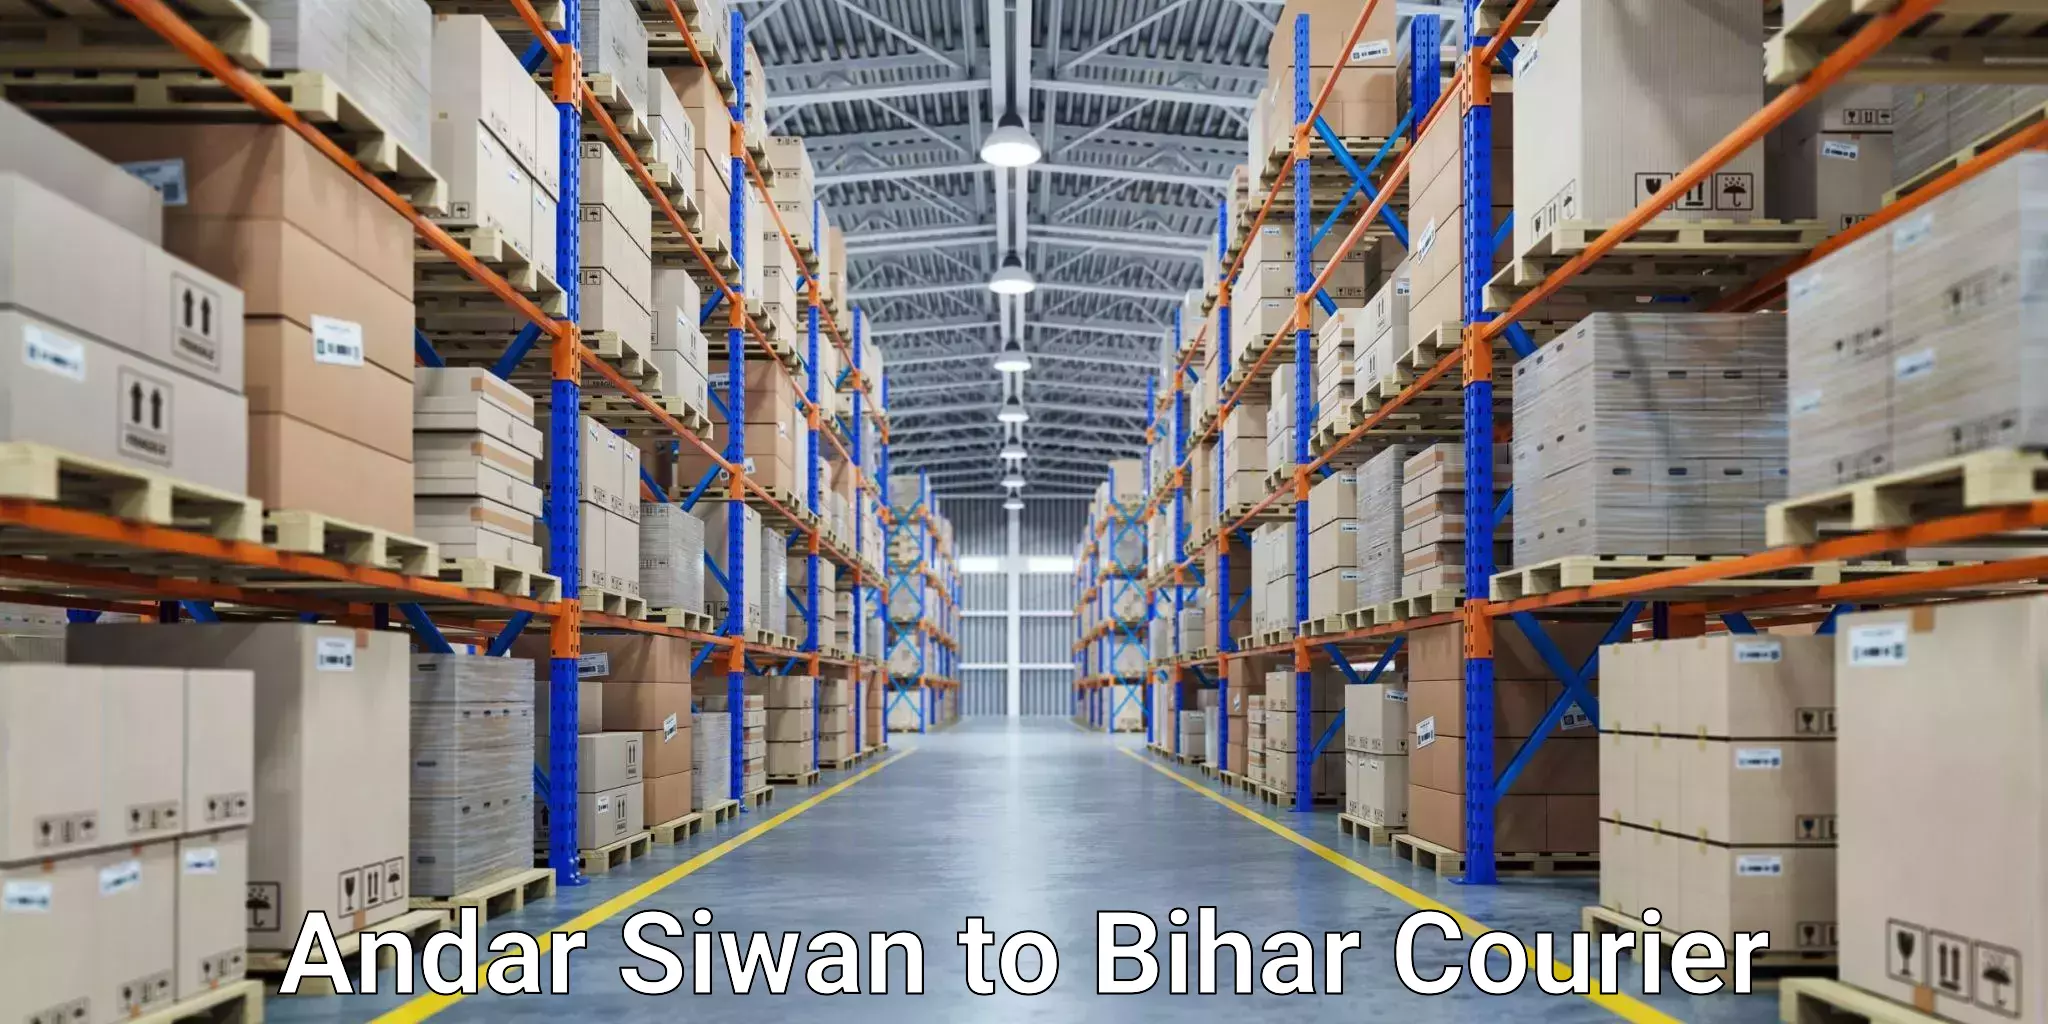 Customer-centric shipping Andar Siwan to Bihar